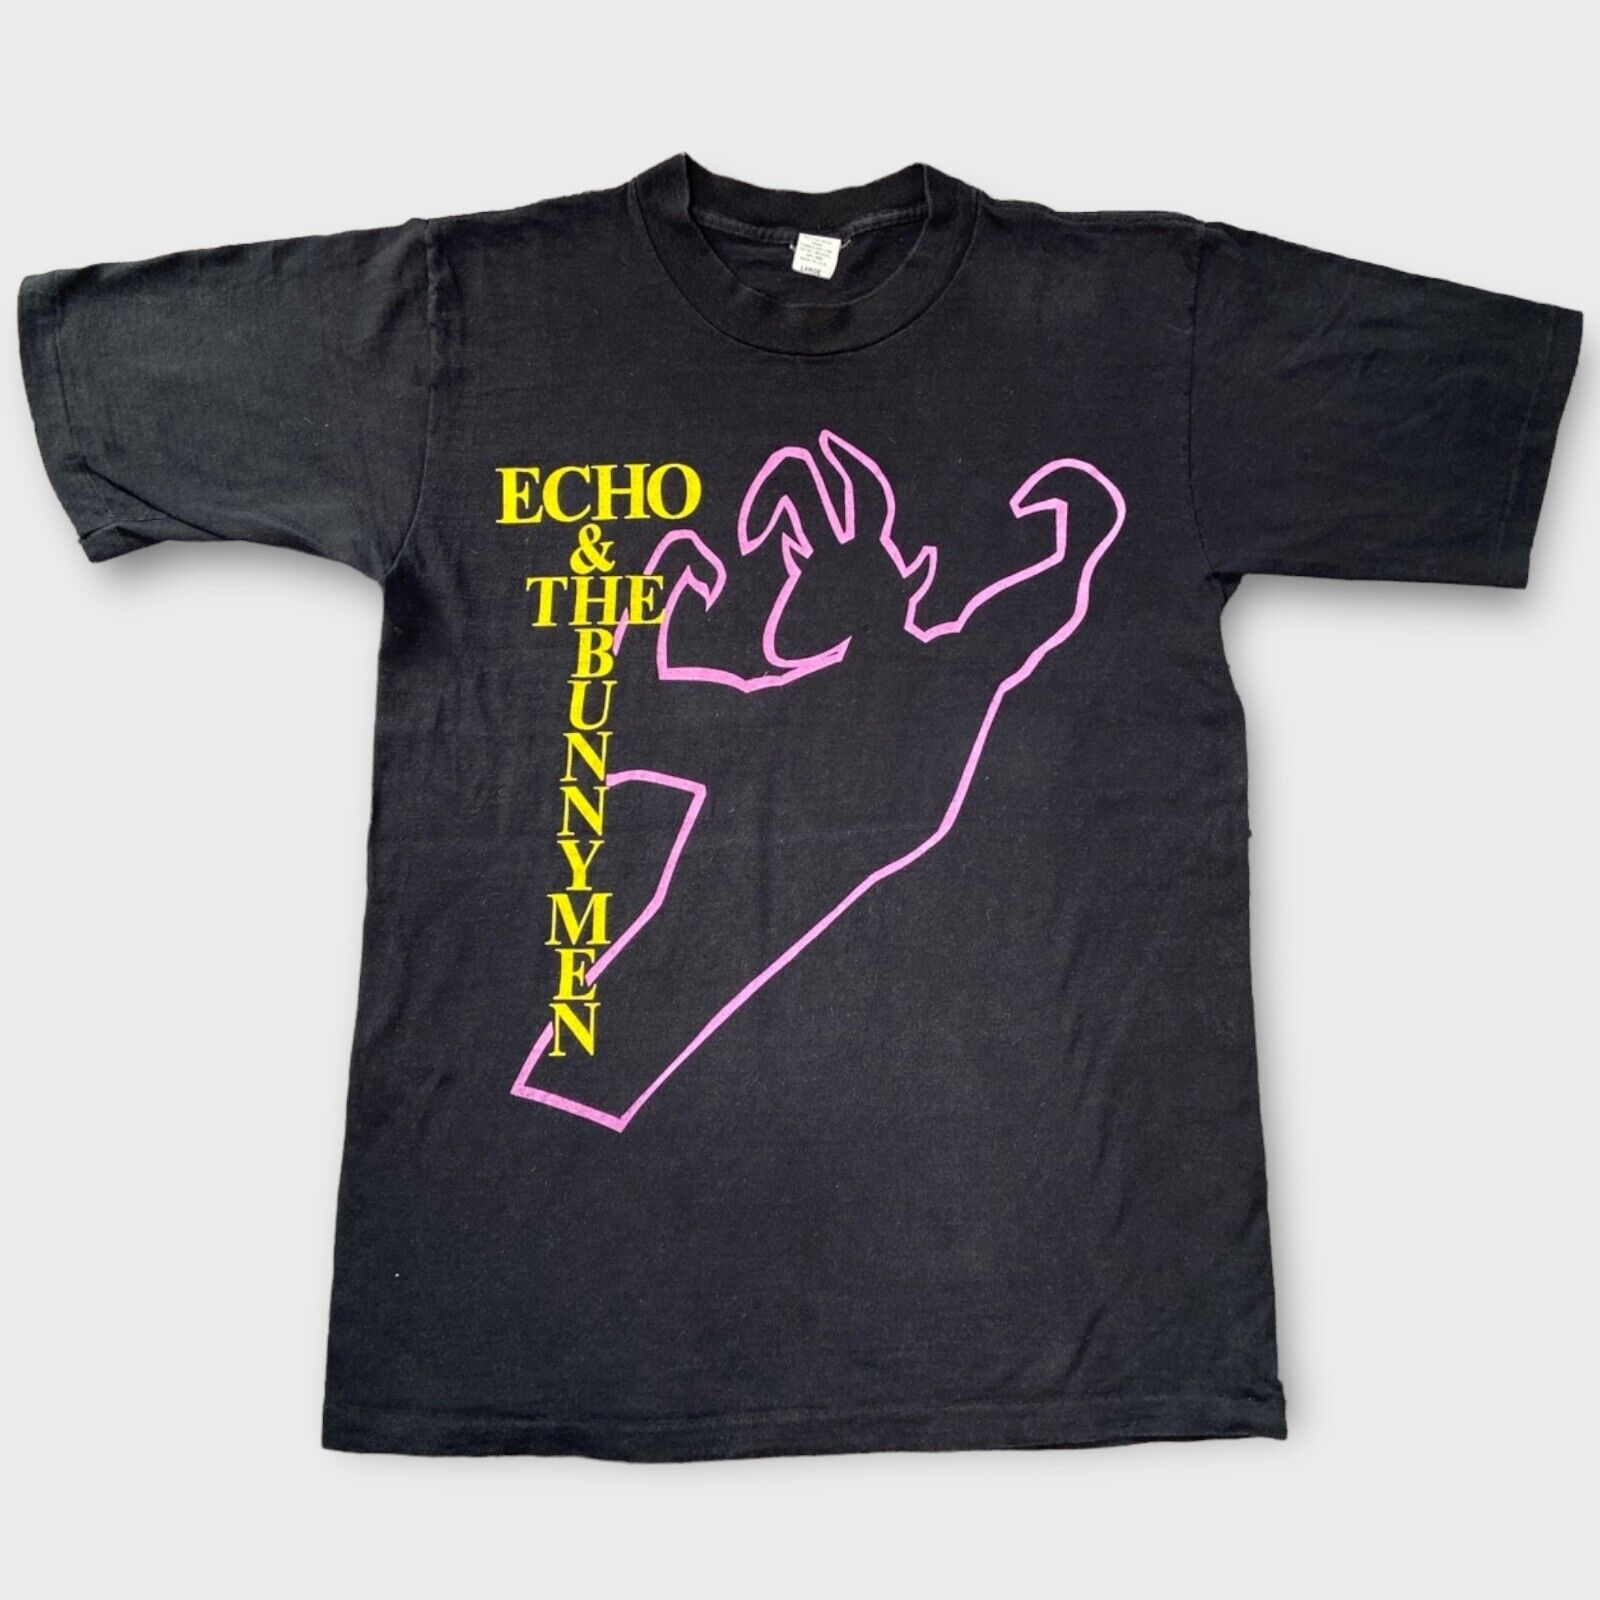 Vintage 1988 Echo & The Bunnymen Tour Shirt (Large)